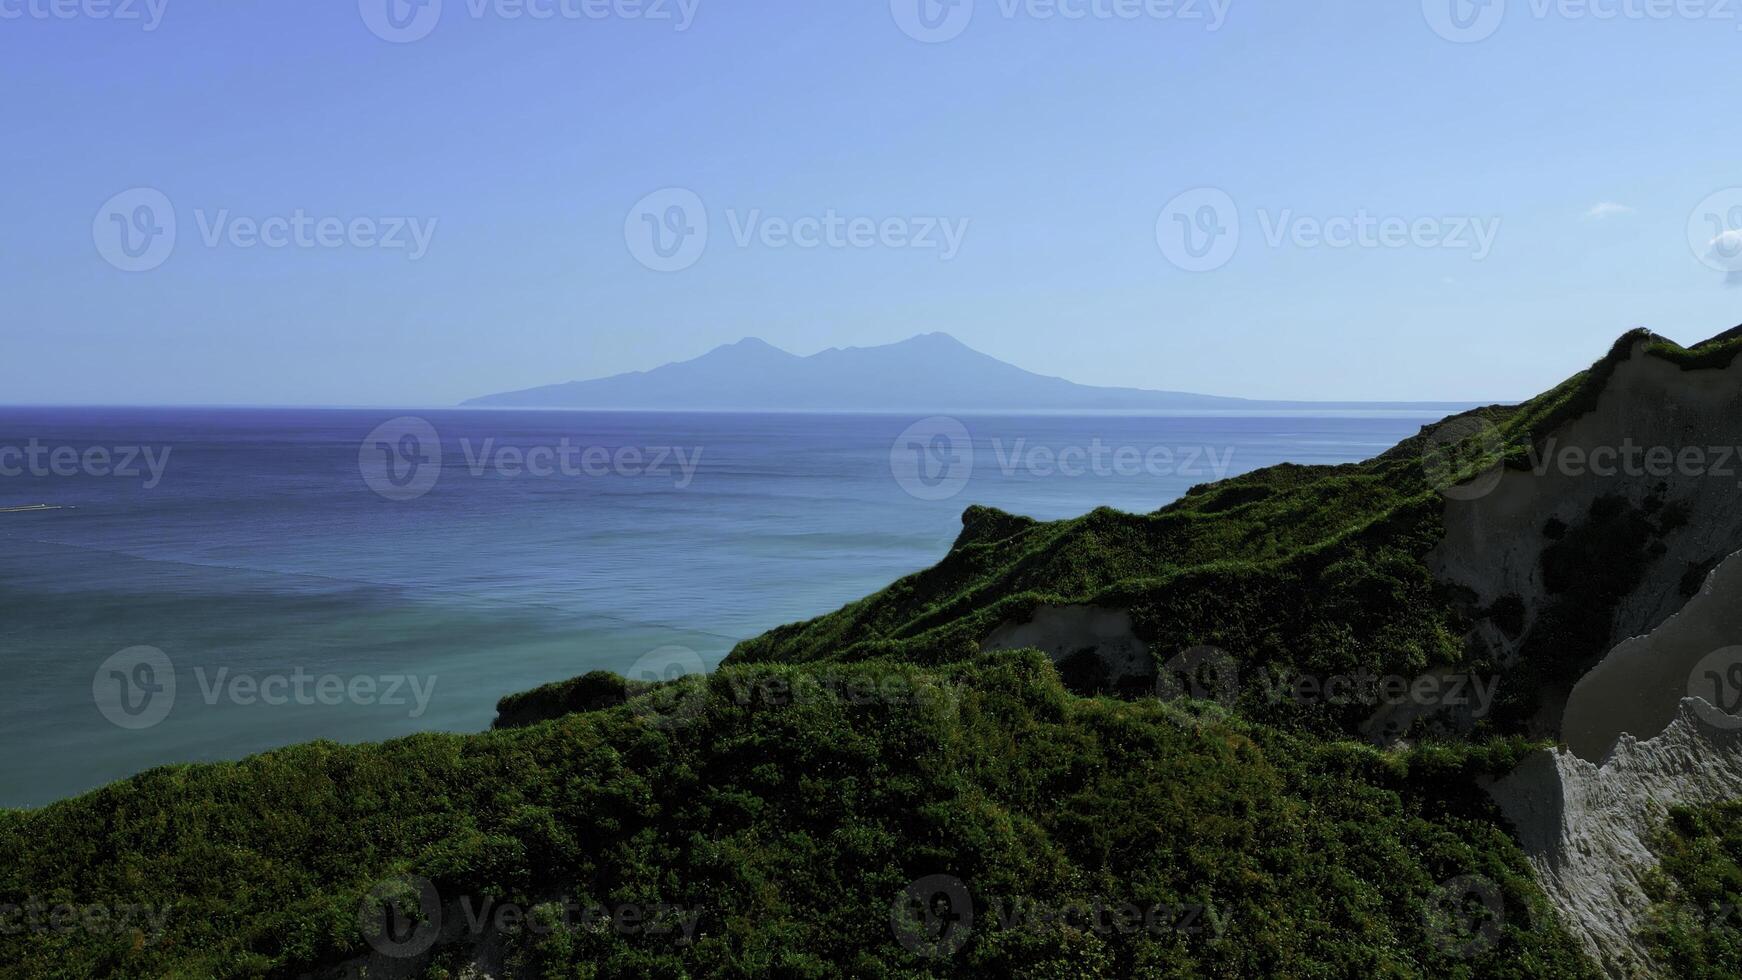 adembenemend antenne visie van dramatisch groen bergen en blauw oceaan. klem. mooi natuur achtergrond van groen oerwoud berg pieken onthullend turkoois water oppervlak. foto